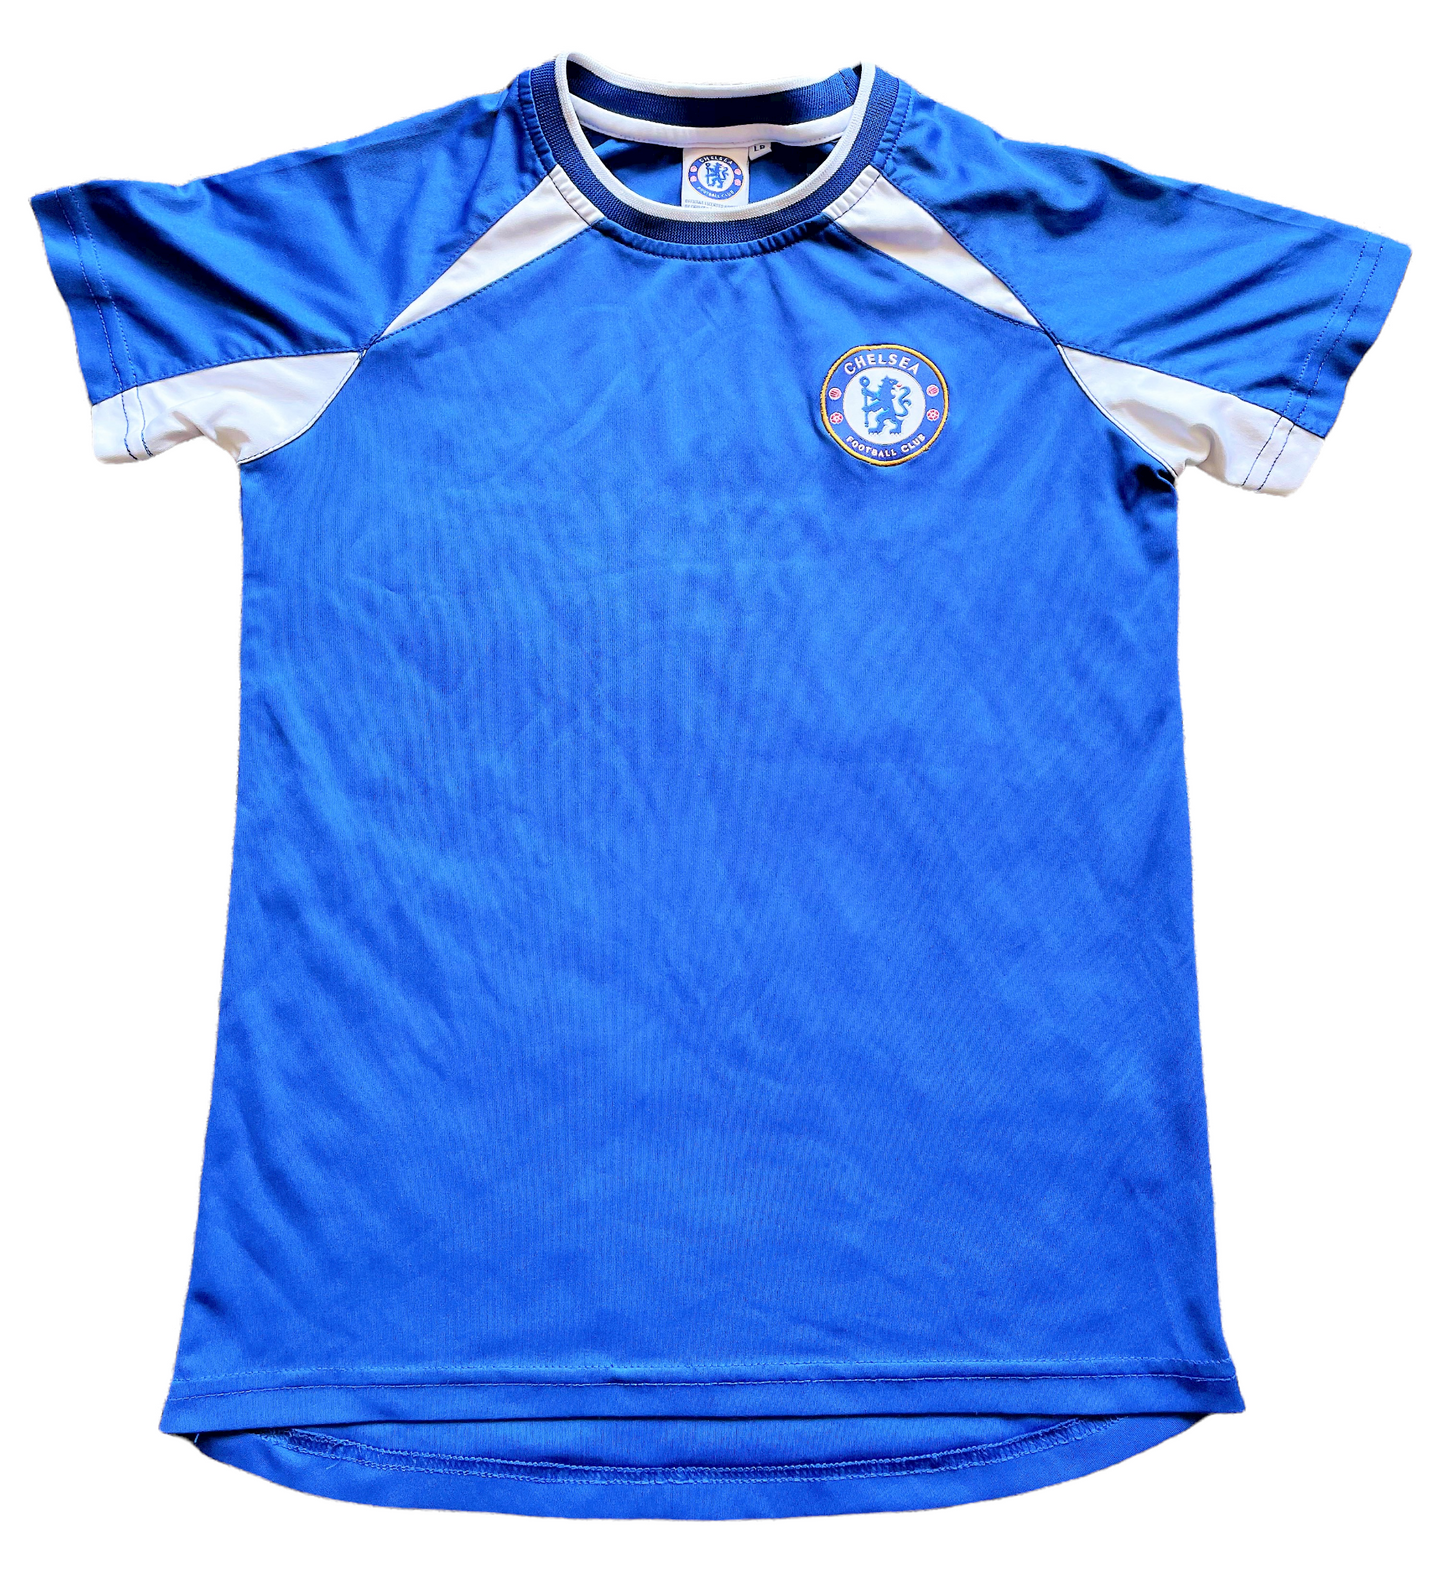 Chelsea Fan Shirt (excellent) Large Boys.